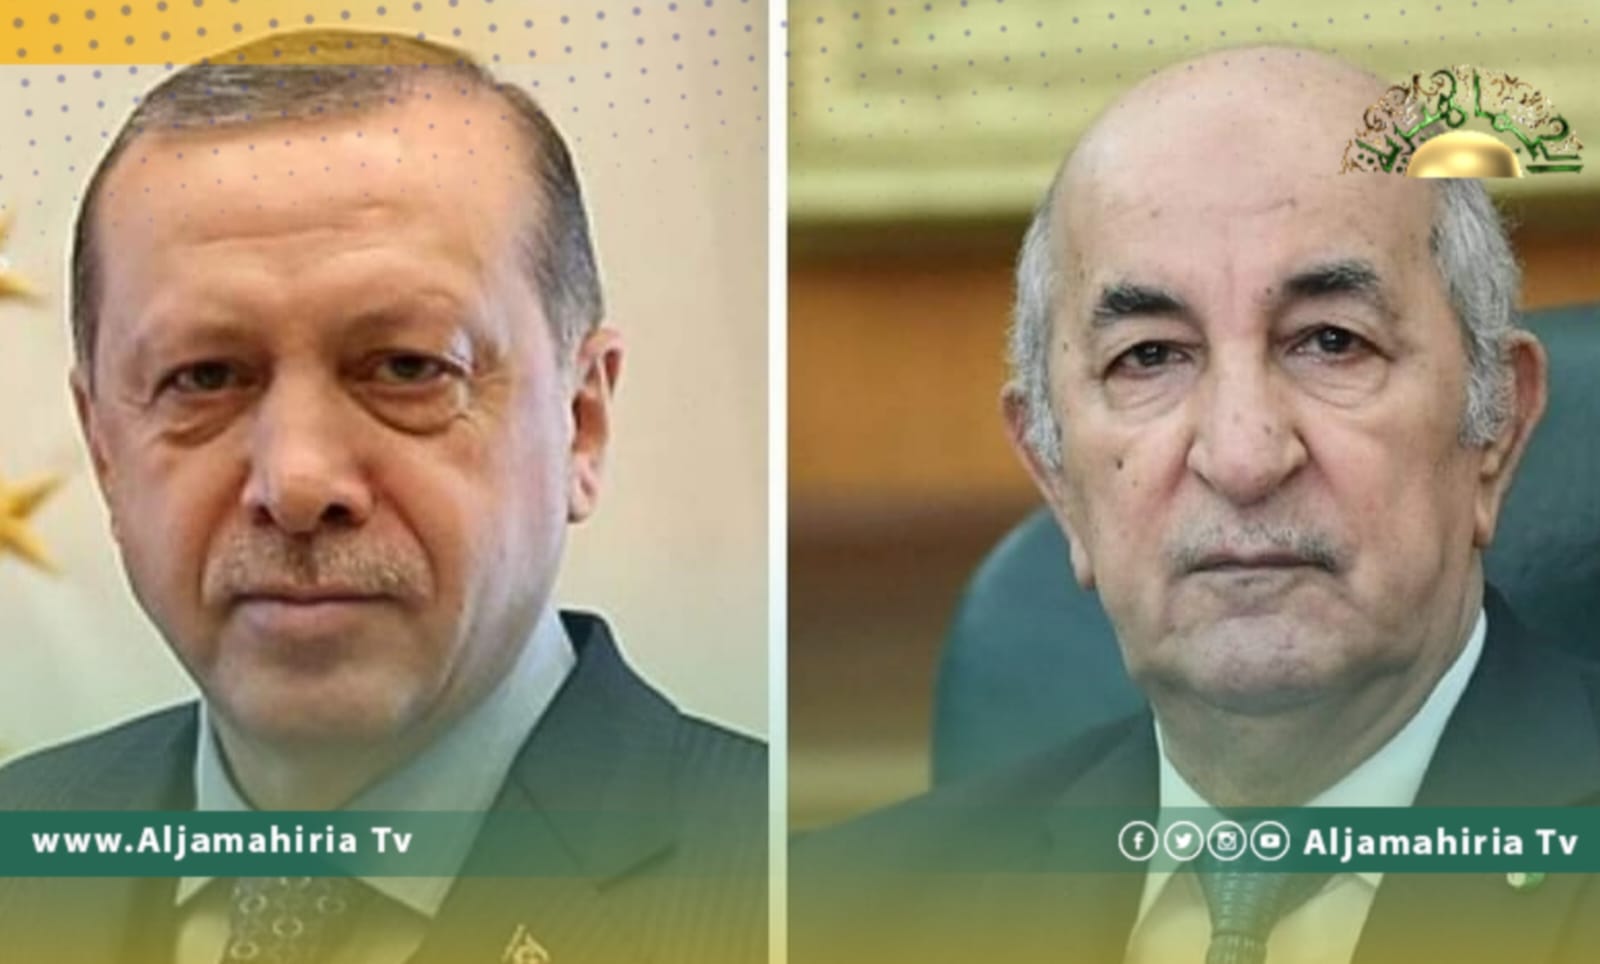 تبون: الجزائر وتركيا لديهما نظرة واحدة بشأن الملف الليبي